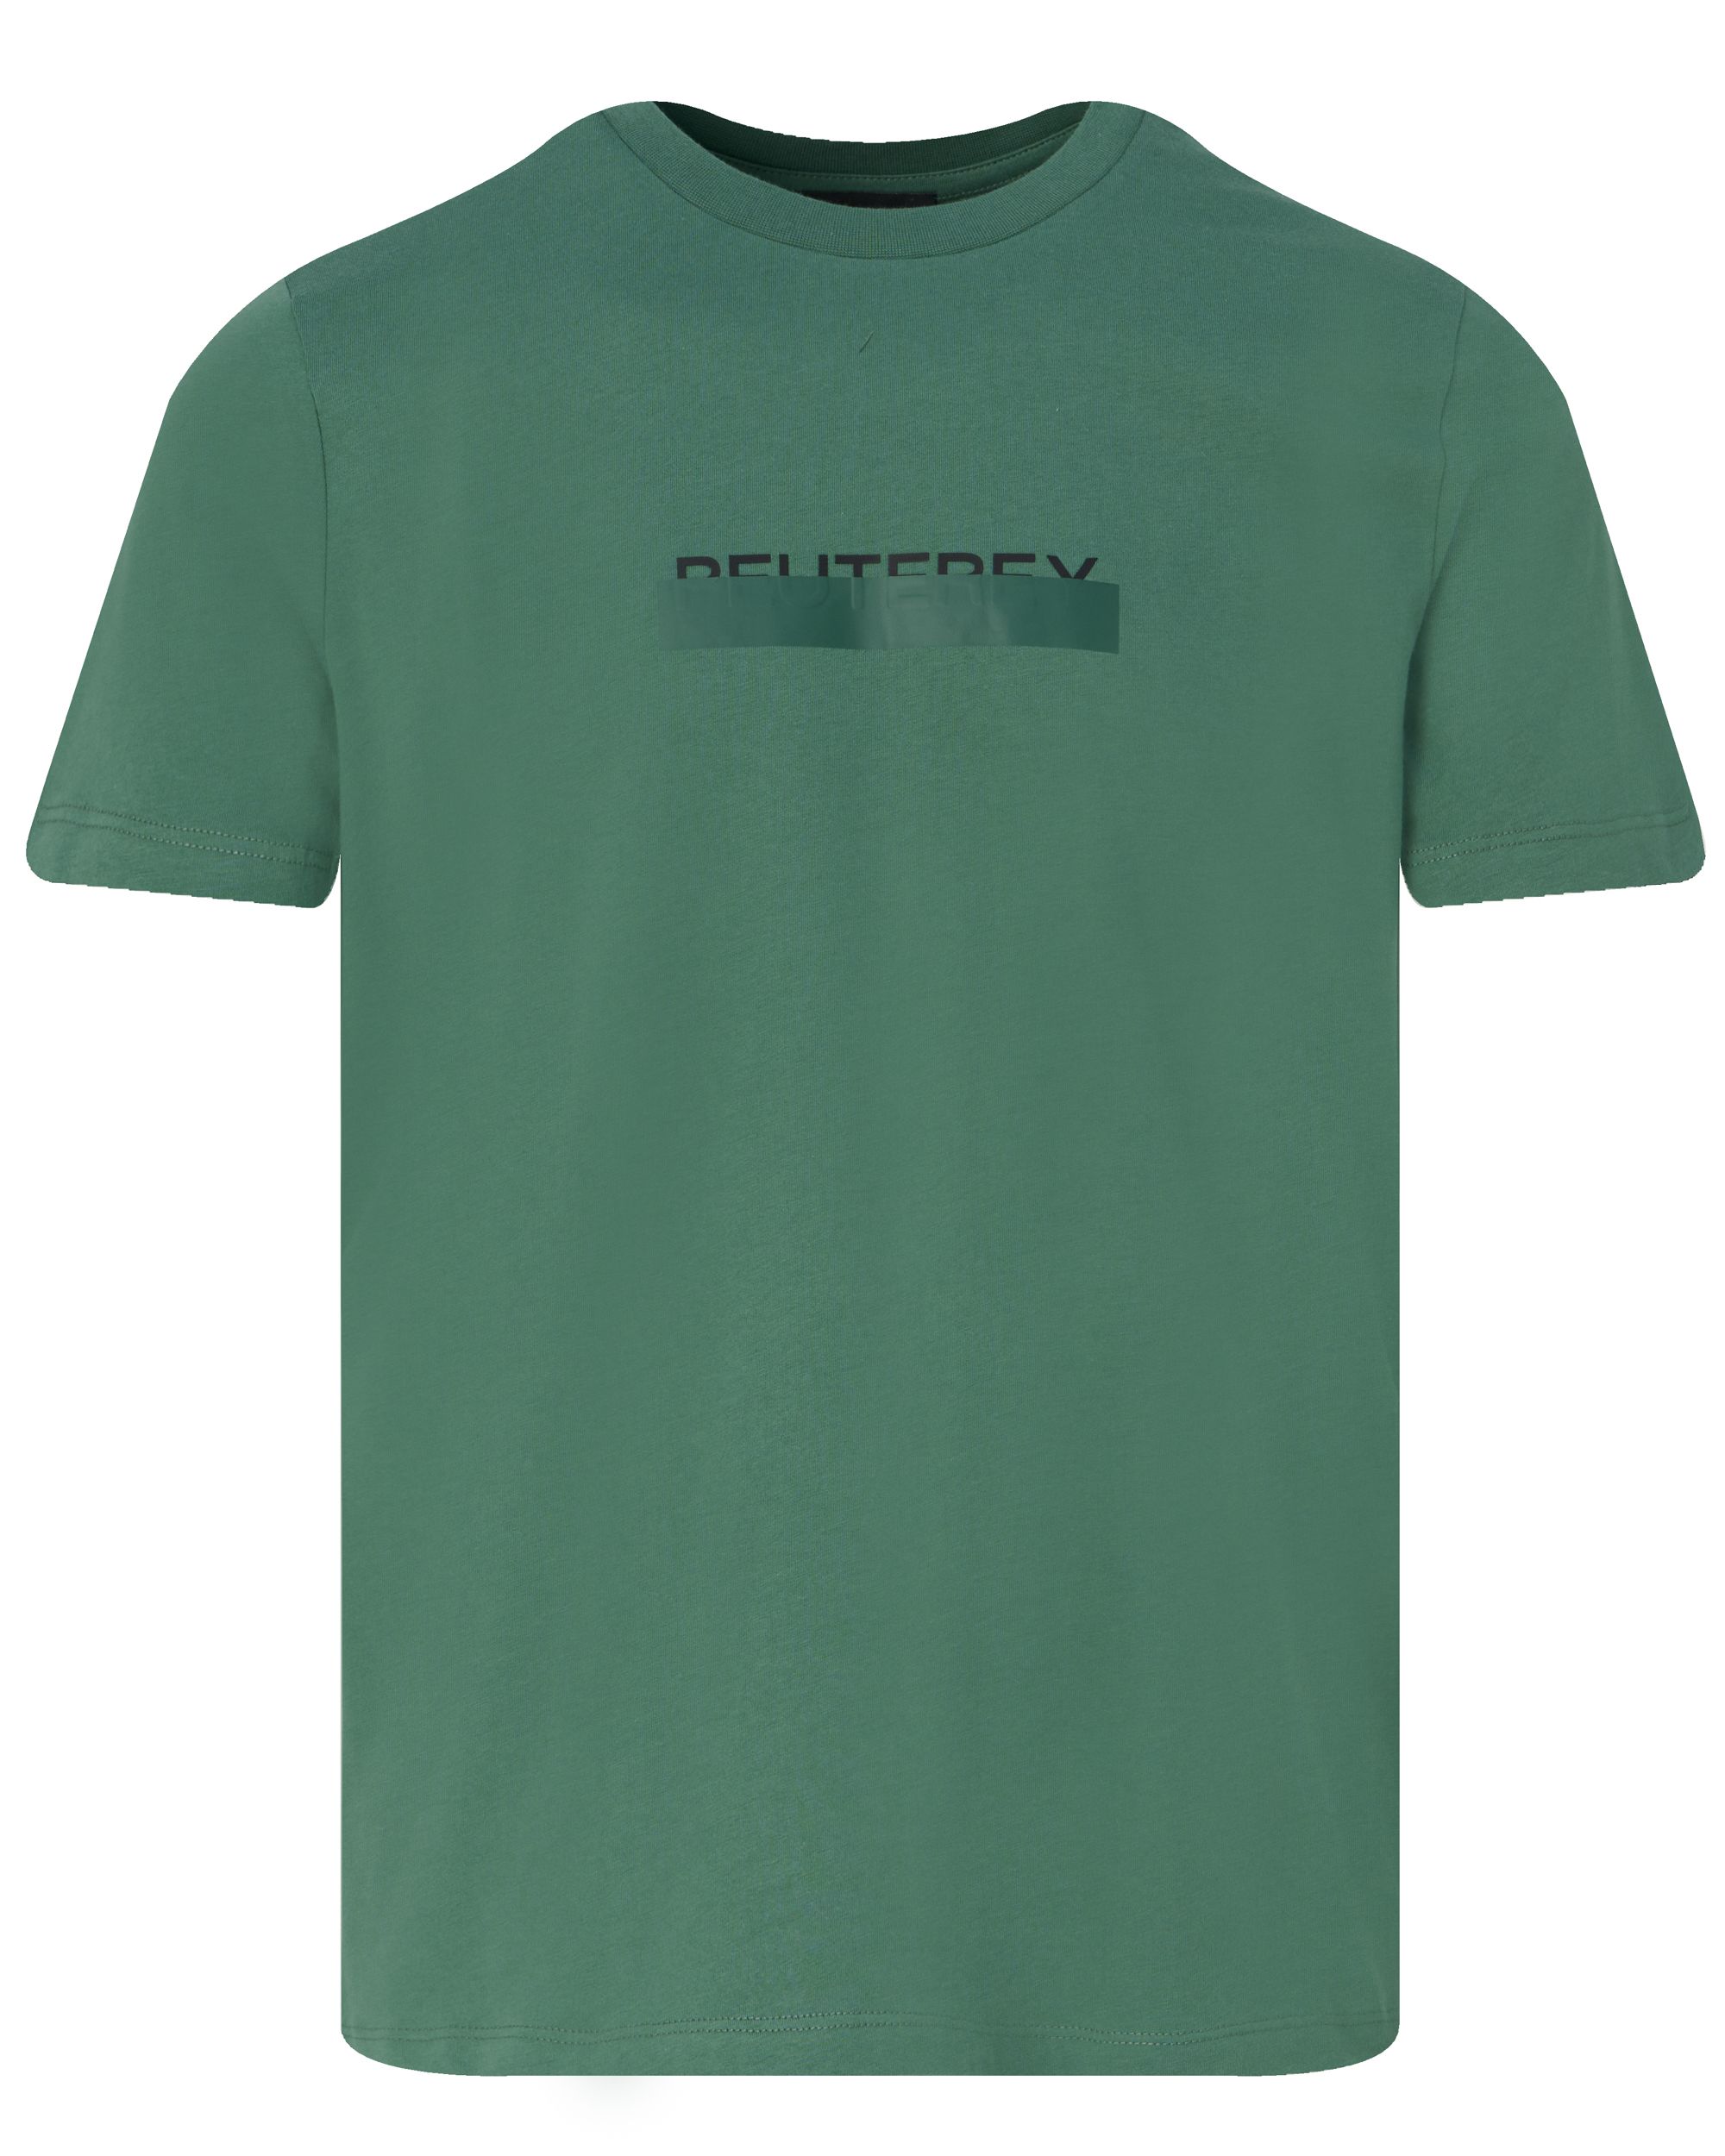 Peuterey Manderly T-shirt KM Groen 094275-001-L